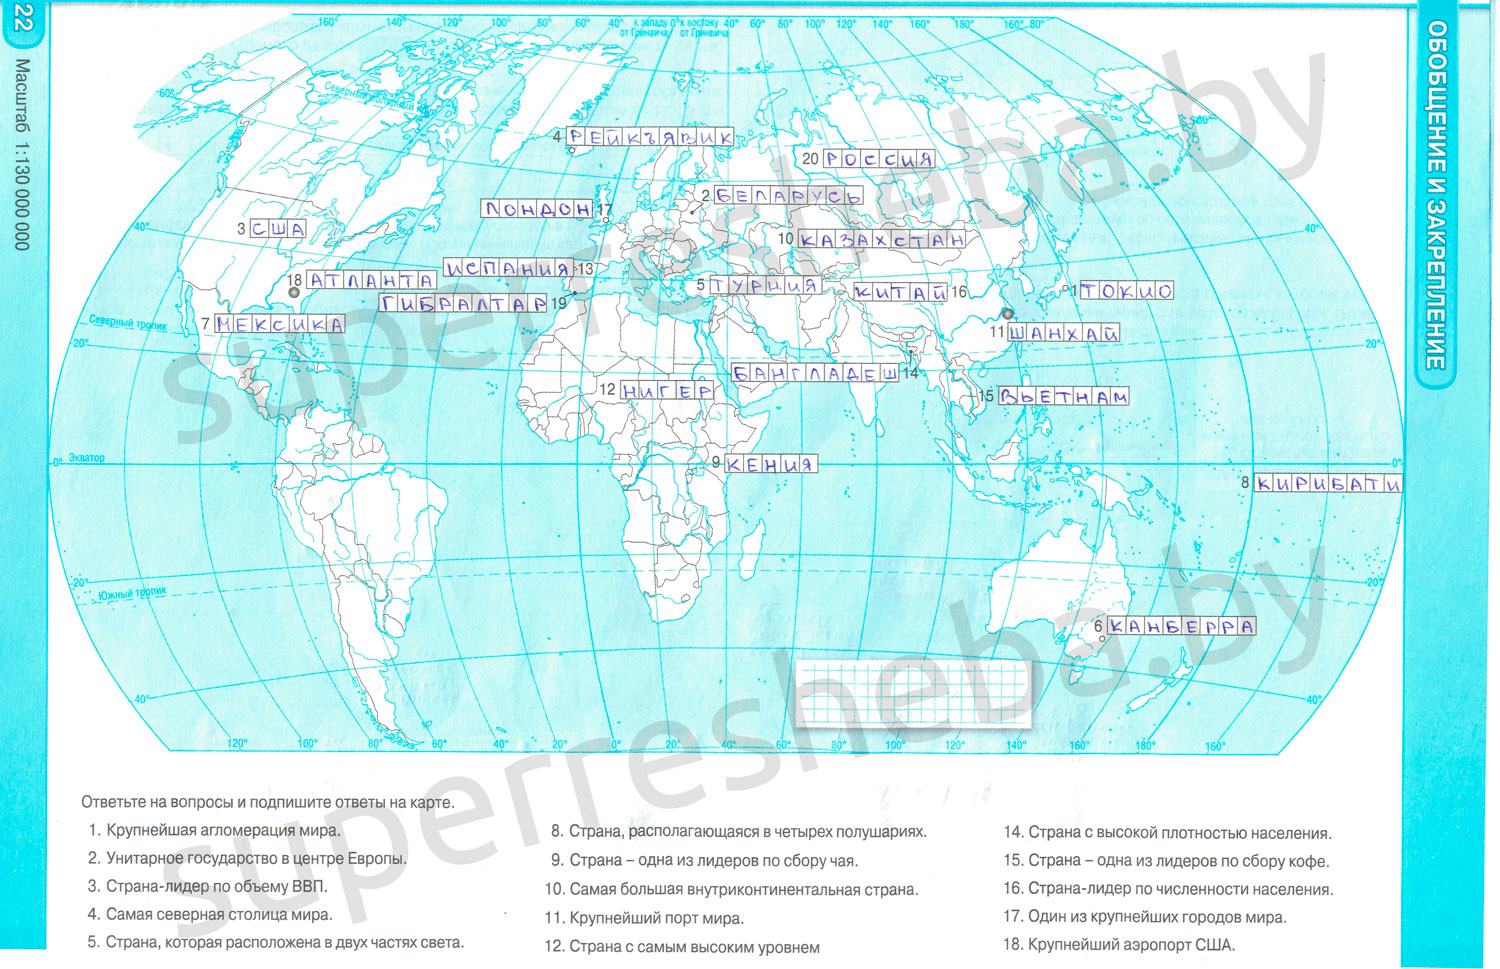 Контурная карта 6 класс география сферы. География ориентирование стороны горизонта контурная карта. Ориентирование стороны горизонта 5 класс контурная карта. География 5 класс контурные карты ориентирование стороны горизонта. Подпишите на карте названия океанов и выделите границы между ними.